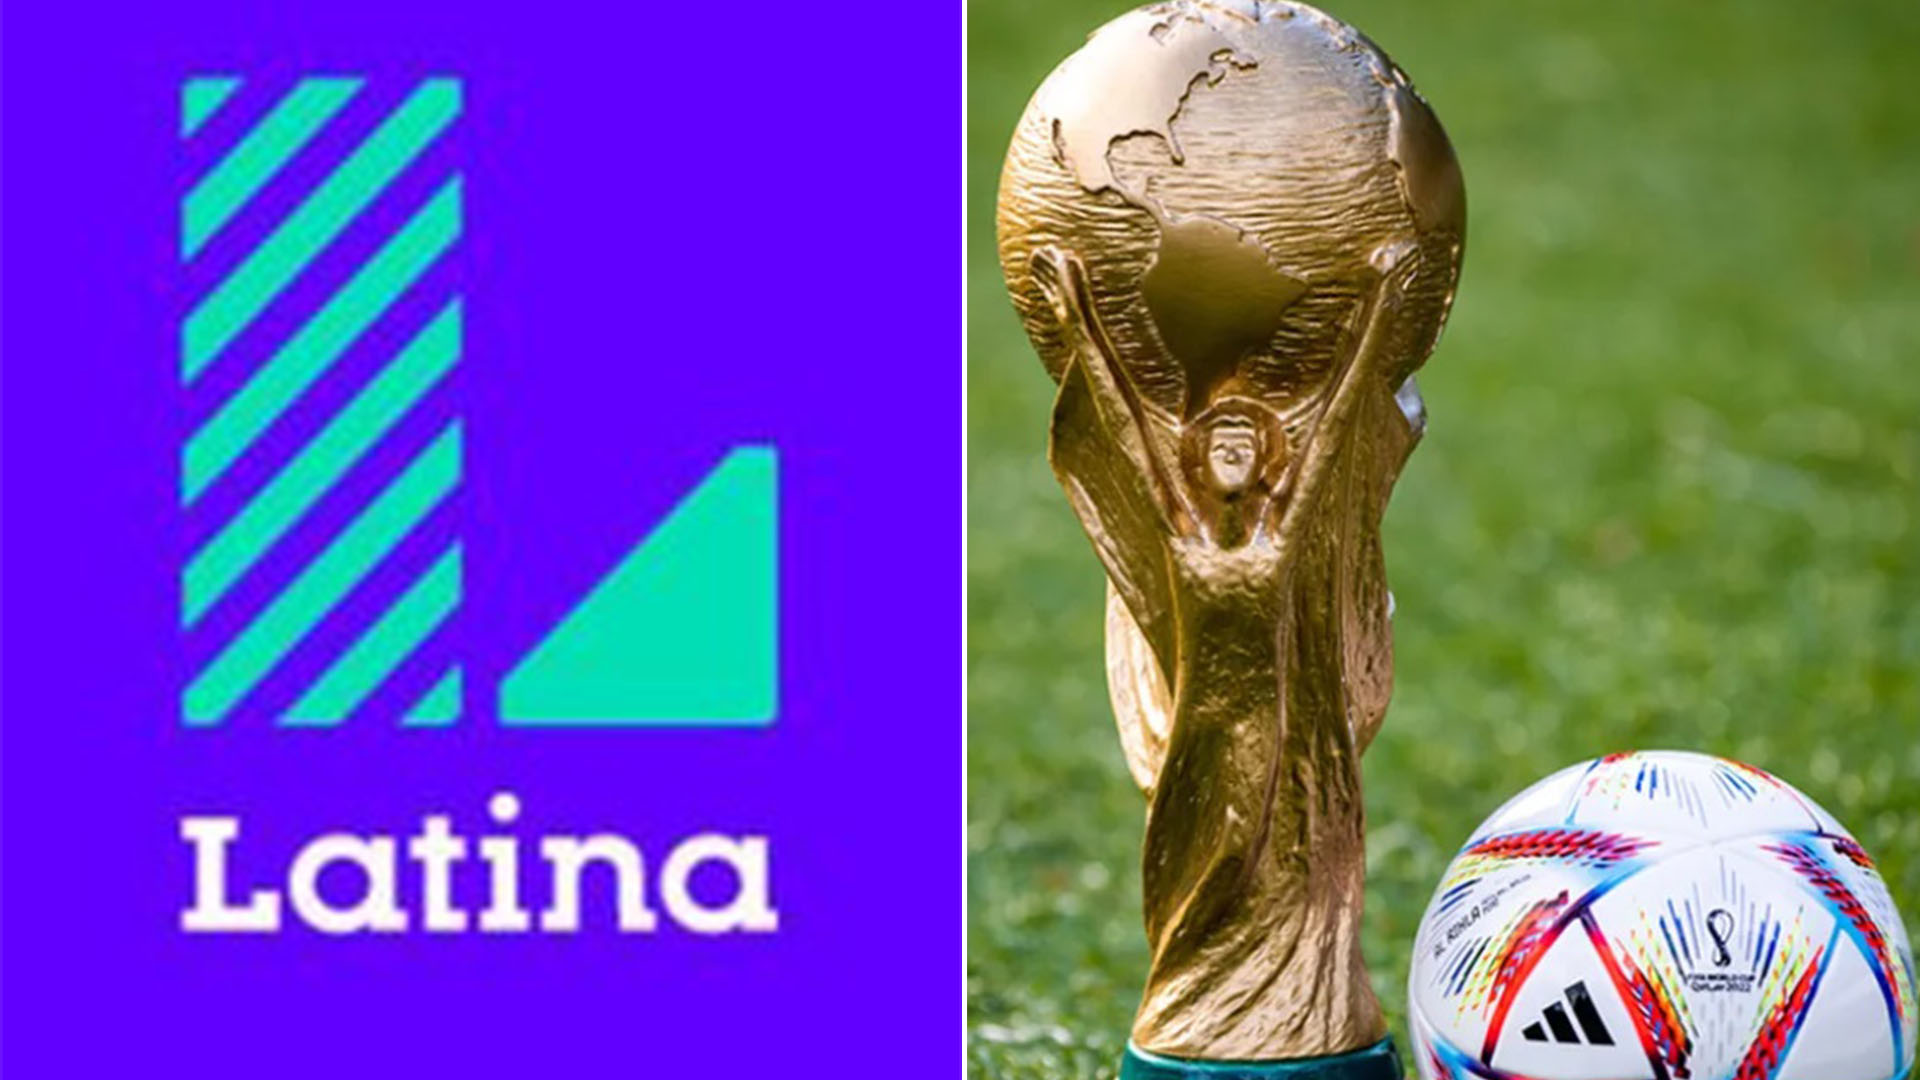 Latina TV respondió a las críticas por transmisión incompleta de partidos del Mundial Qatar 2022